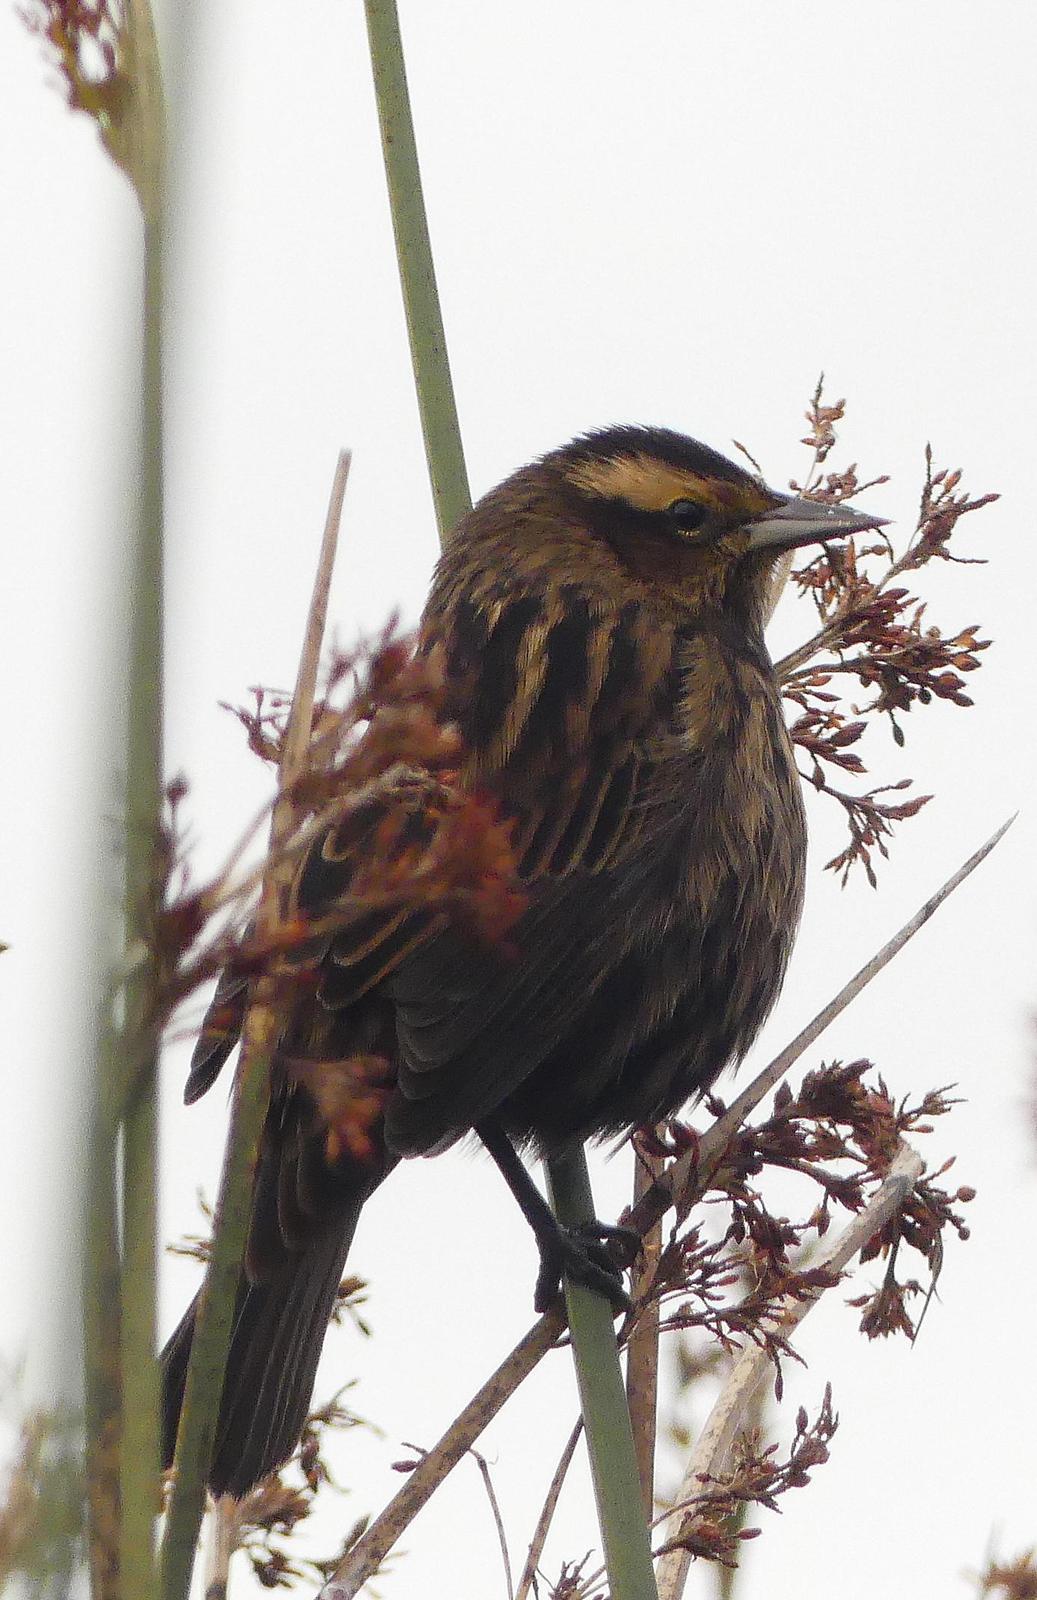 Wren-like Rushbird Photo by Montserrat Lara